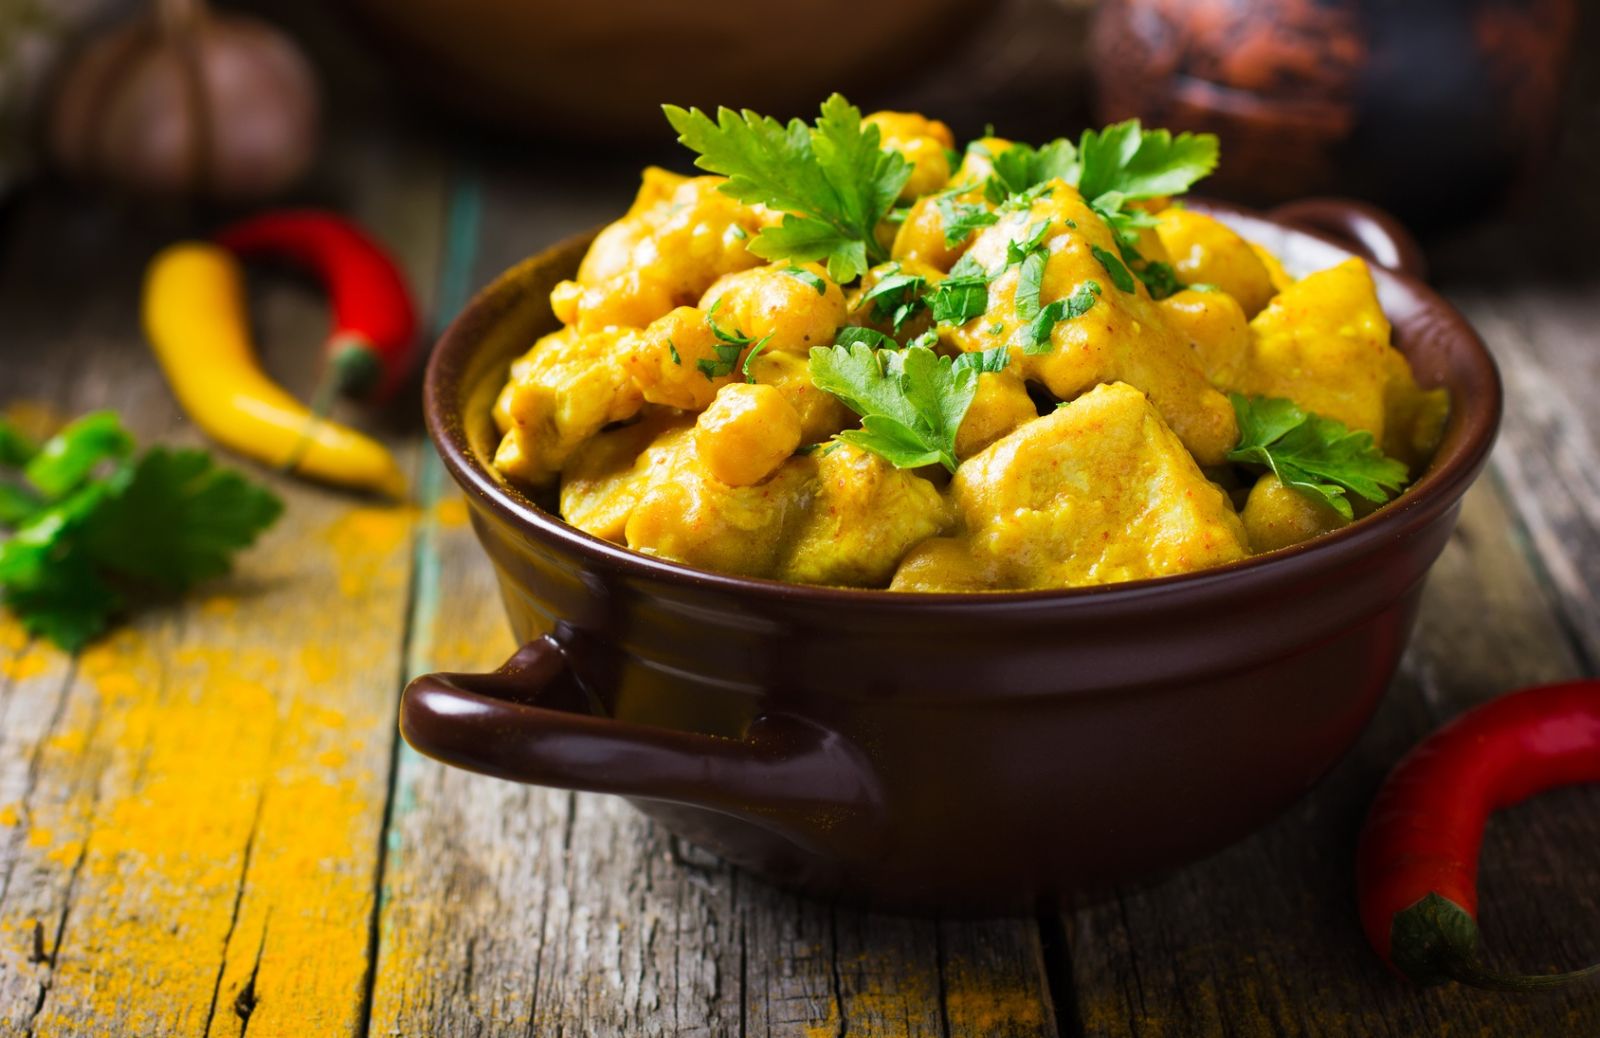 Ricette esotiche: pollo al curry con latte di cocco e mele Envy